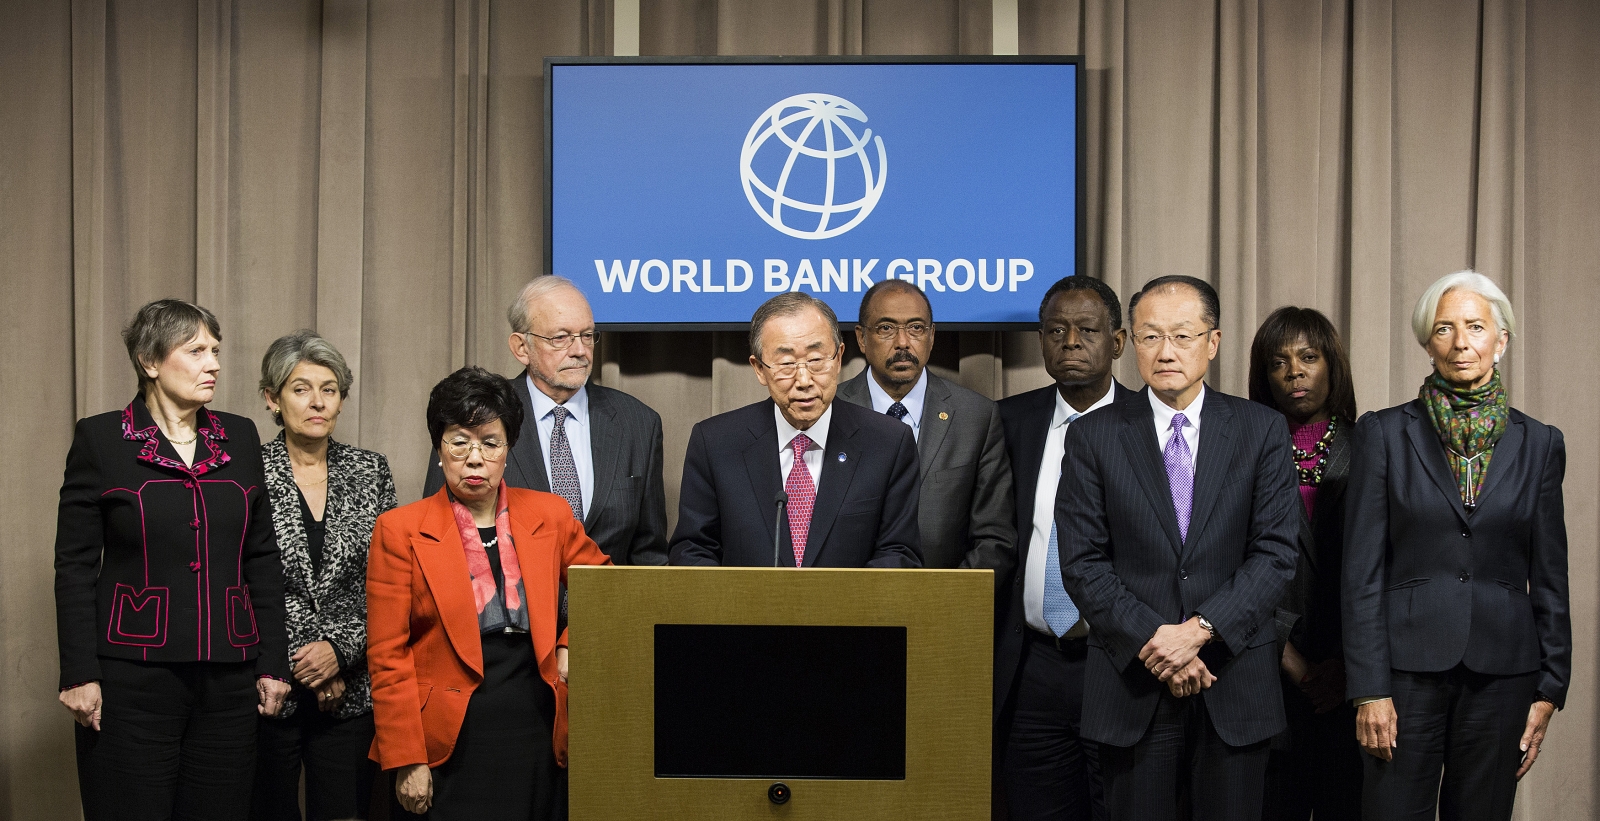 Фонд всемирный банк. Всемирный банк ООН. Всемирный банк международные организации. Группа Всемирного банка. Всемирный банк картинки.